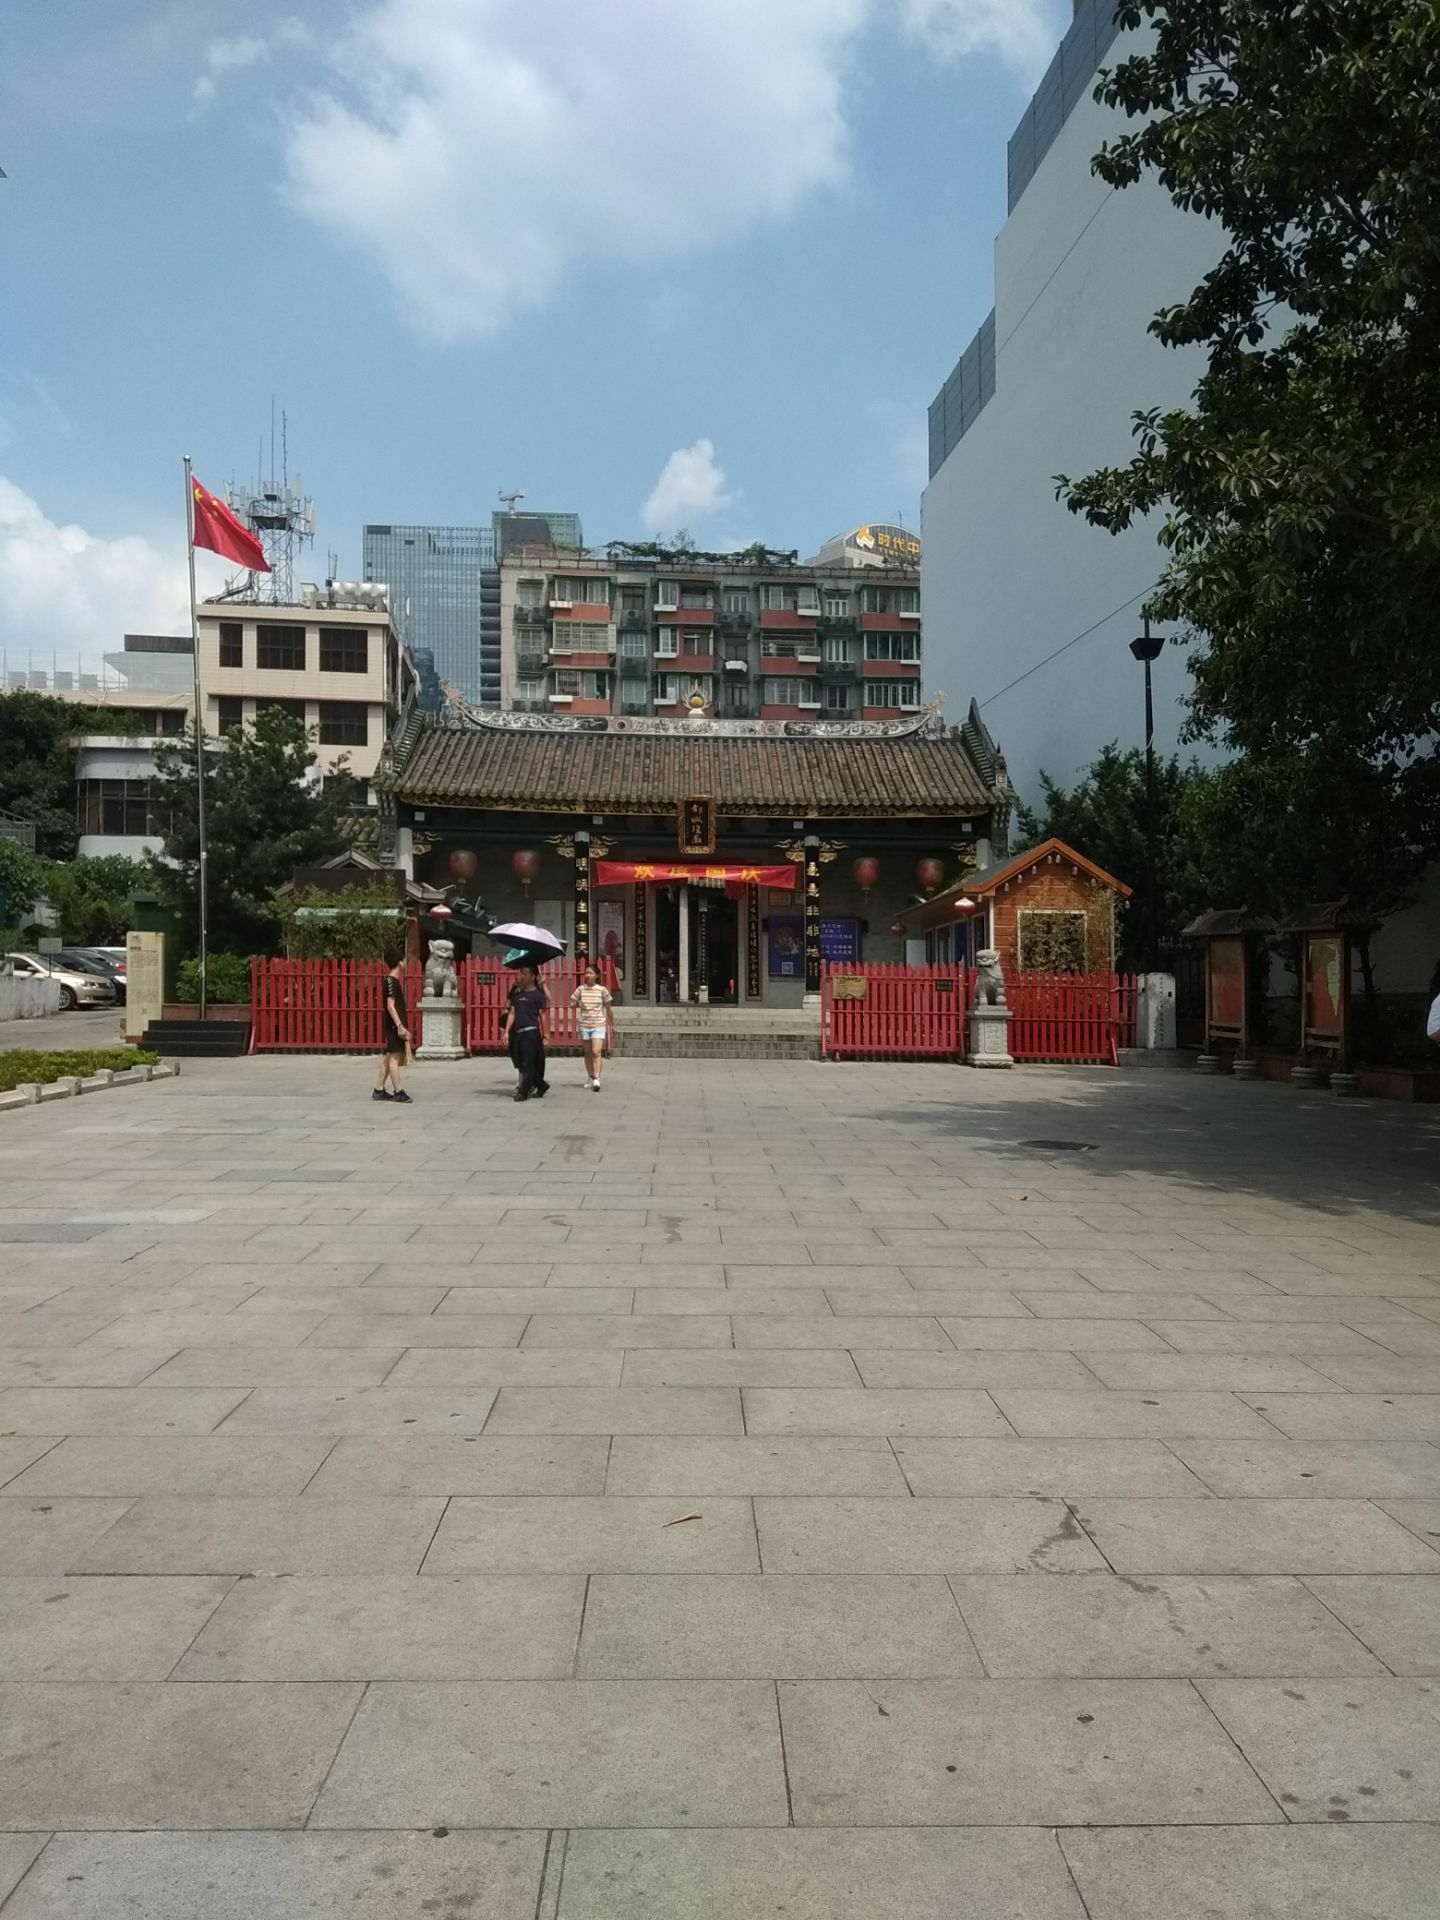 城隍庙 - 热门商圈 -上海市文旅推广网-上海市文化和旅游局 提供专业文化和旅游及会展信息资讯